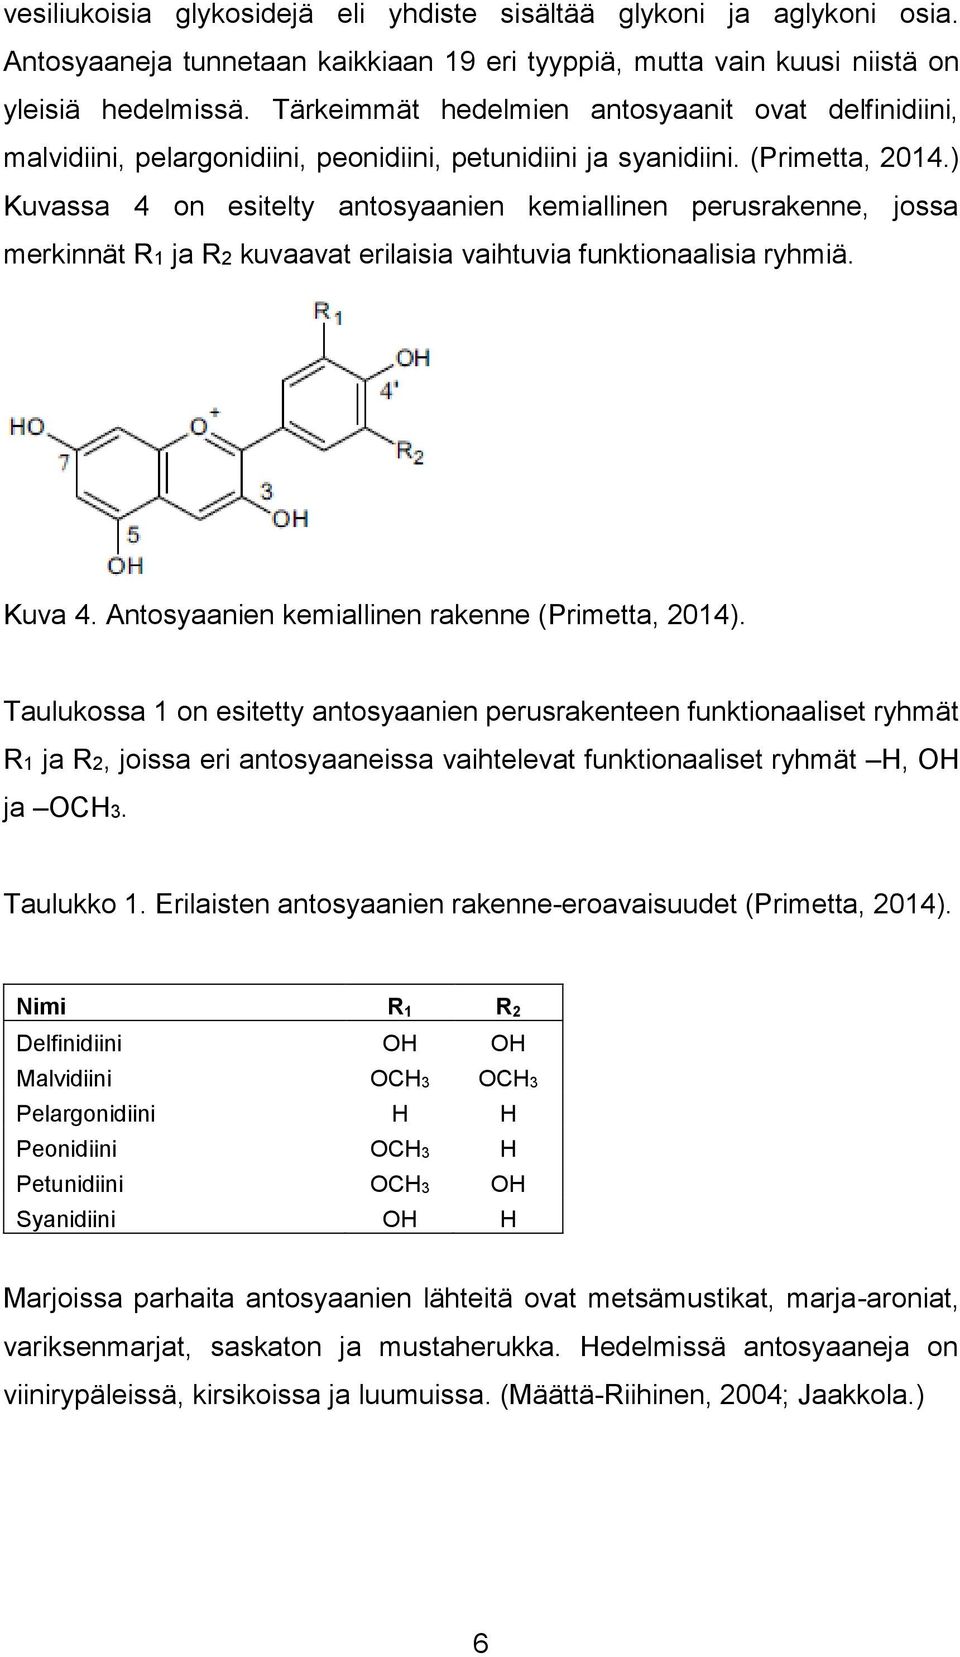 ) Kuvassa 4 on esitelty antosyaanien kemiallinen perusrakenne, jossa merkinnät R1 ja R2 kuvaavat erilaisia vaihtuvia funktionaalisia ryhmiä. Kuva 4. Antosyaanien kemiallinen rakenne (Primetta, 2014).